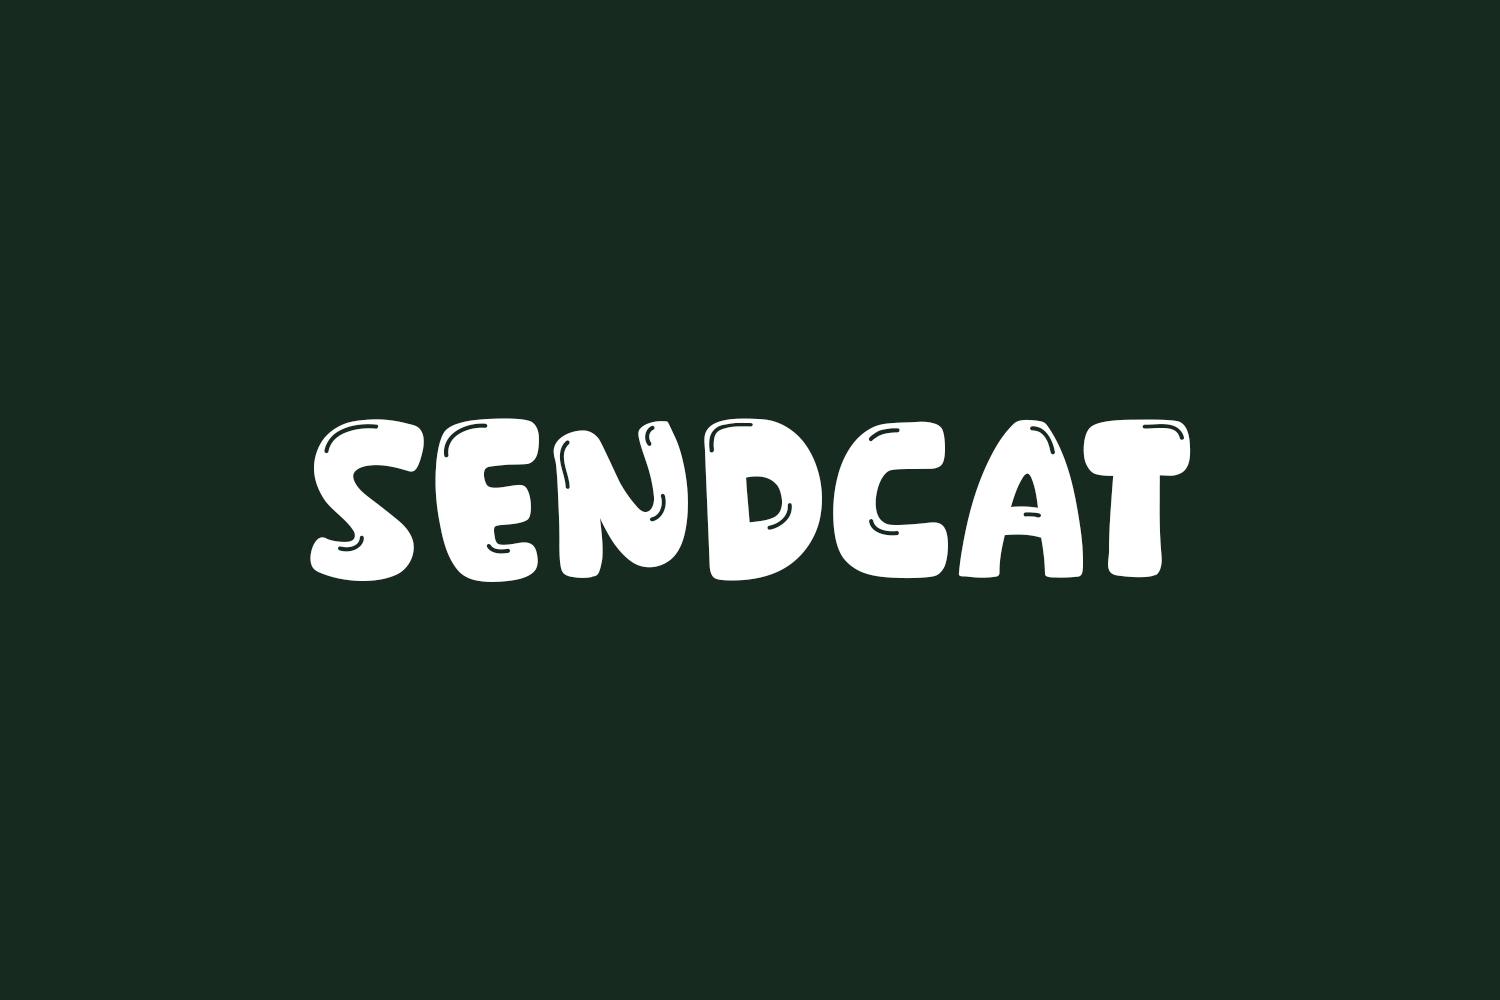 Sendcat Free Font